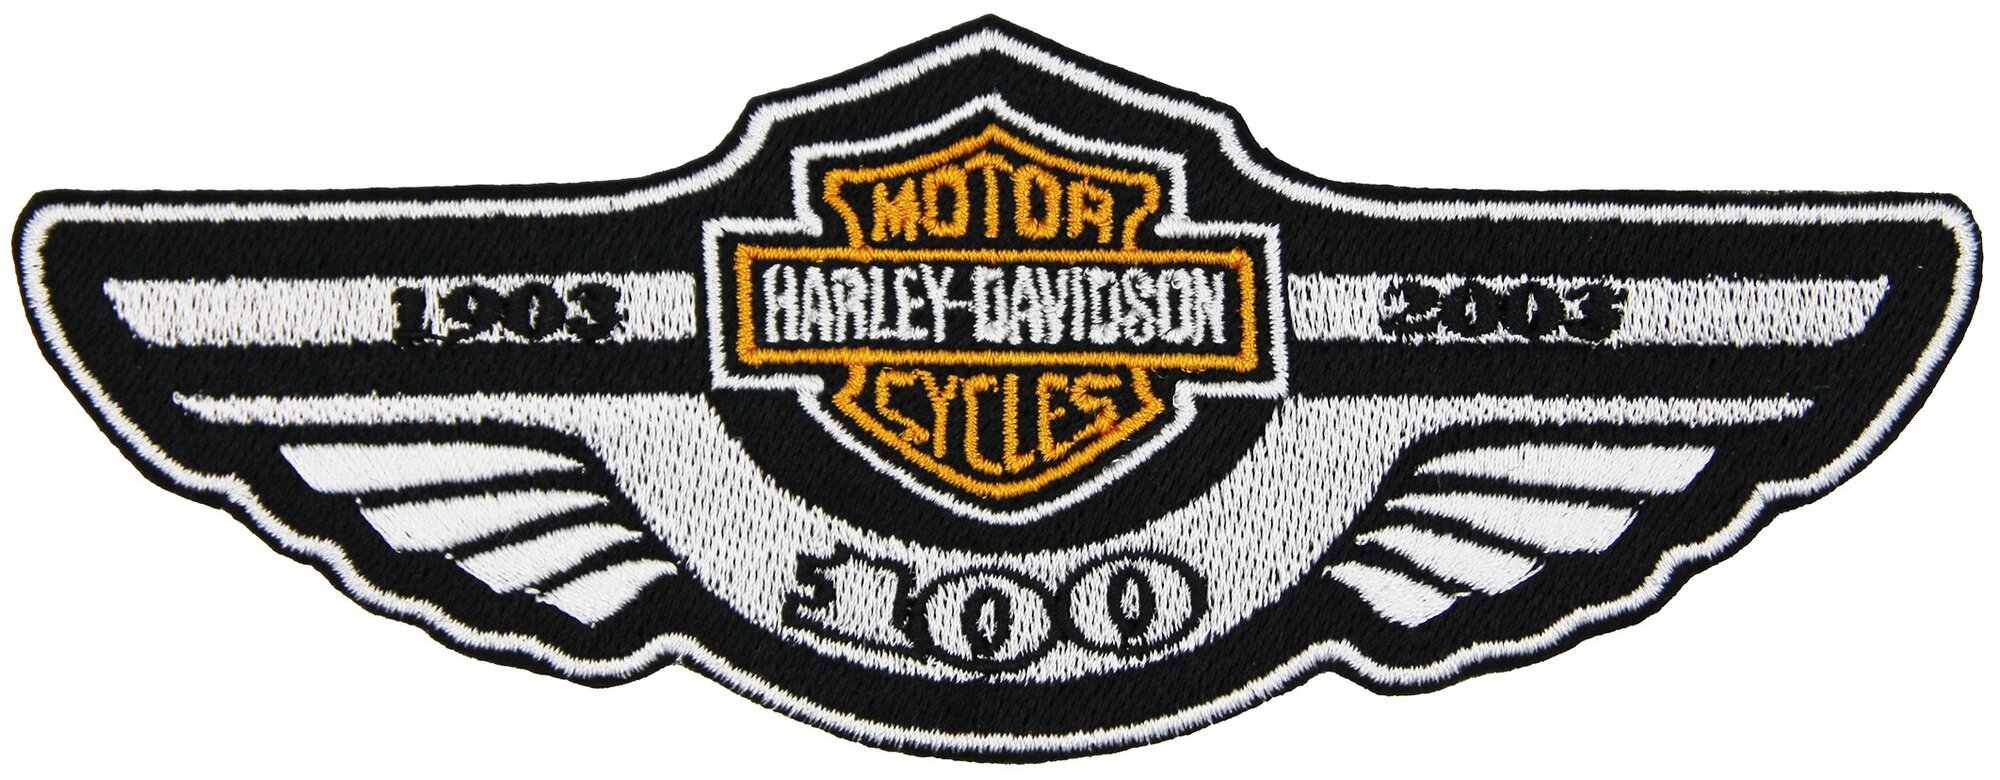 Нашивка патч шеврон "Harley Davidson. Крылья 1903-2003" 150x56mm PTC269